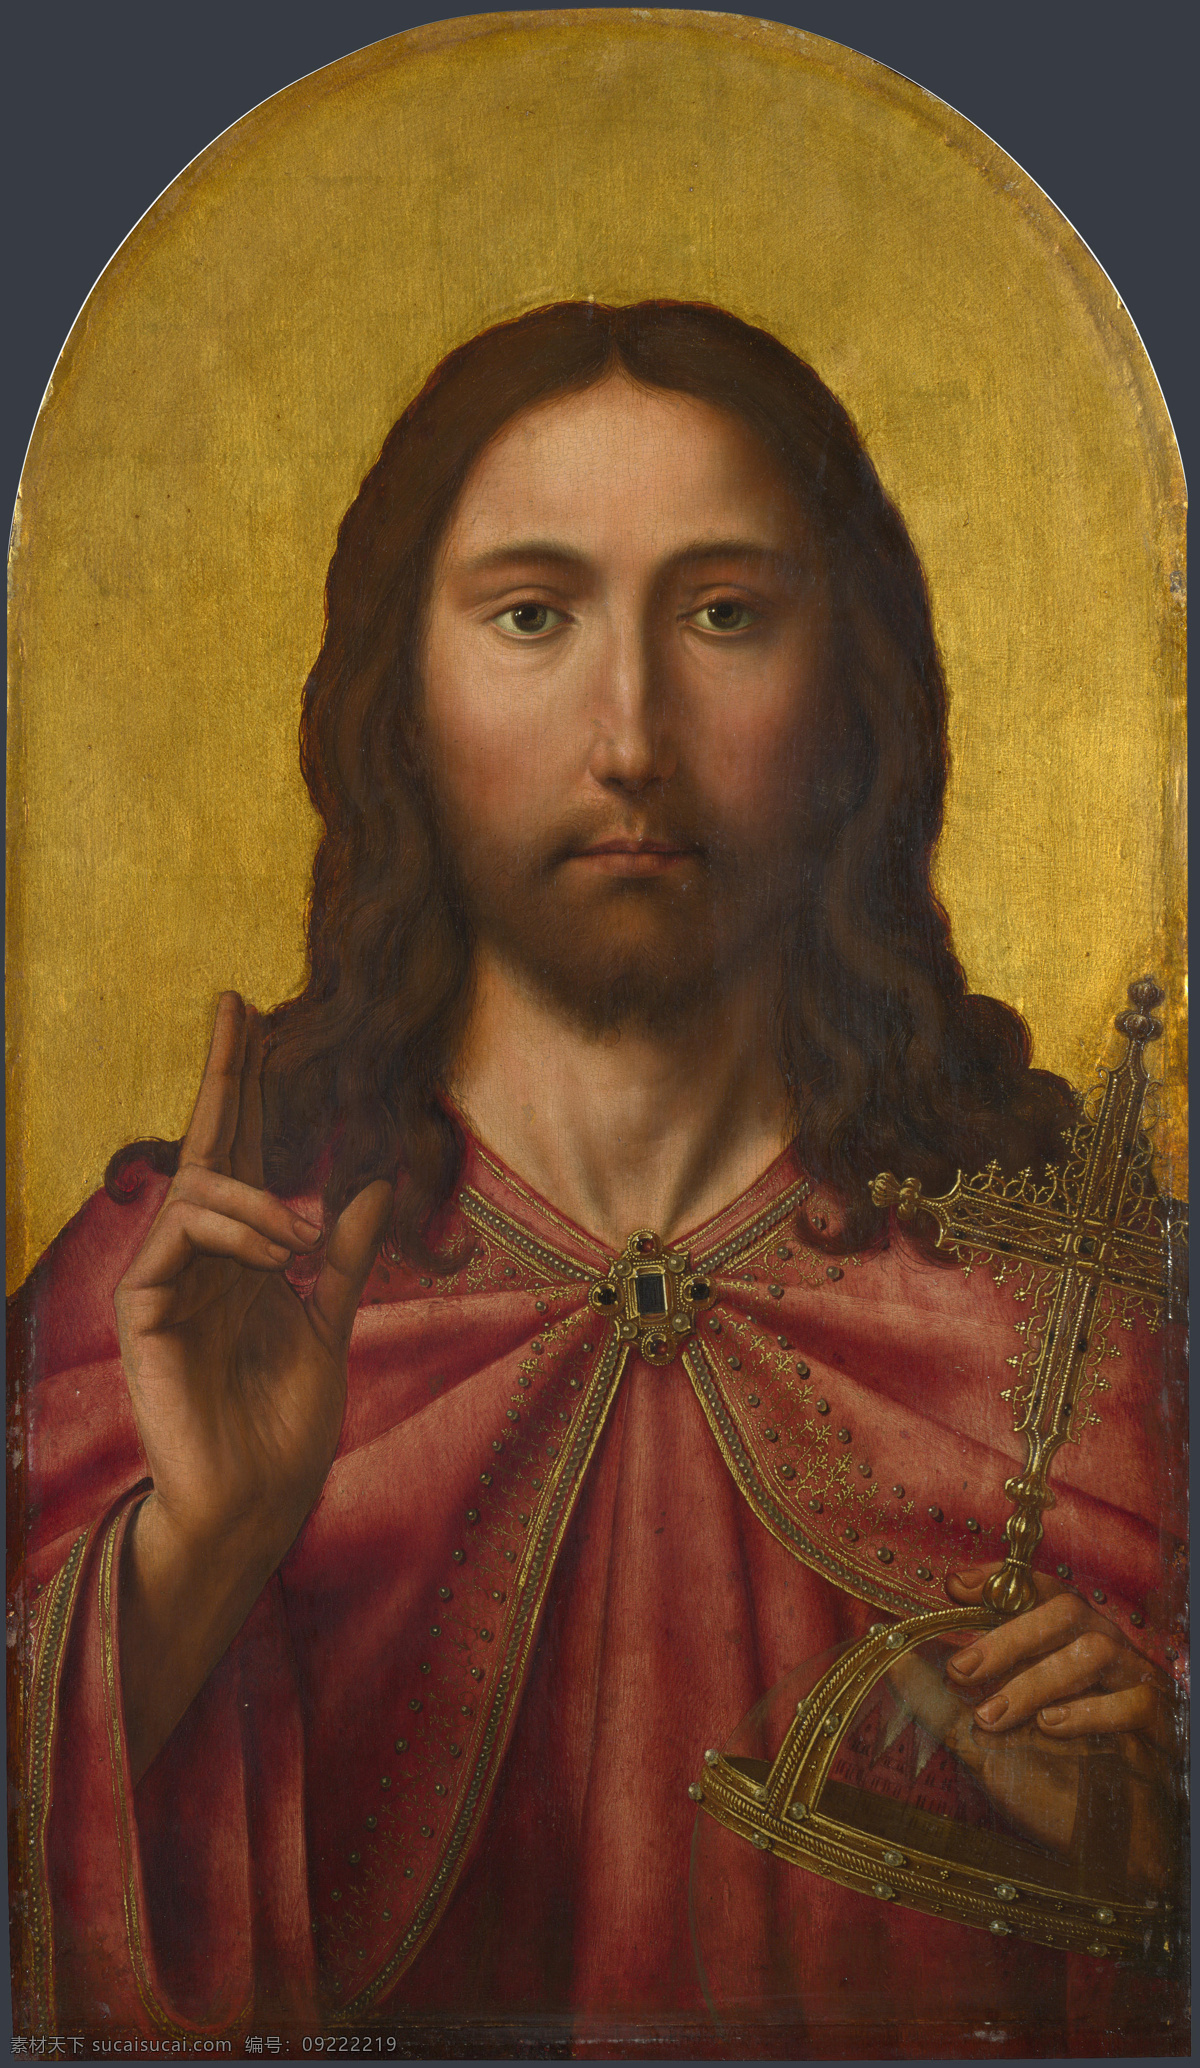 基督 耶稣 肖像画 世界名画 油画 西方油画 西方文化 绘画艺术 基督教 宗教绘画 上帝 书画文字 文化艺术